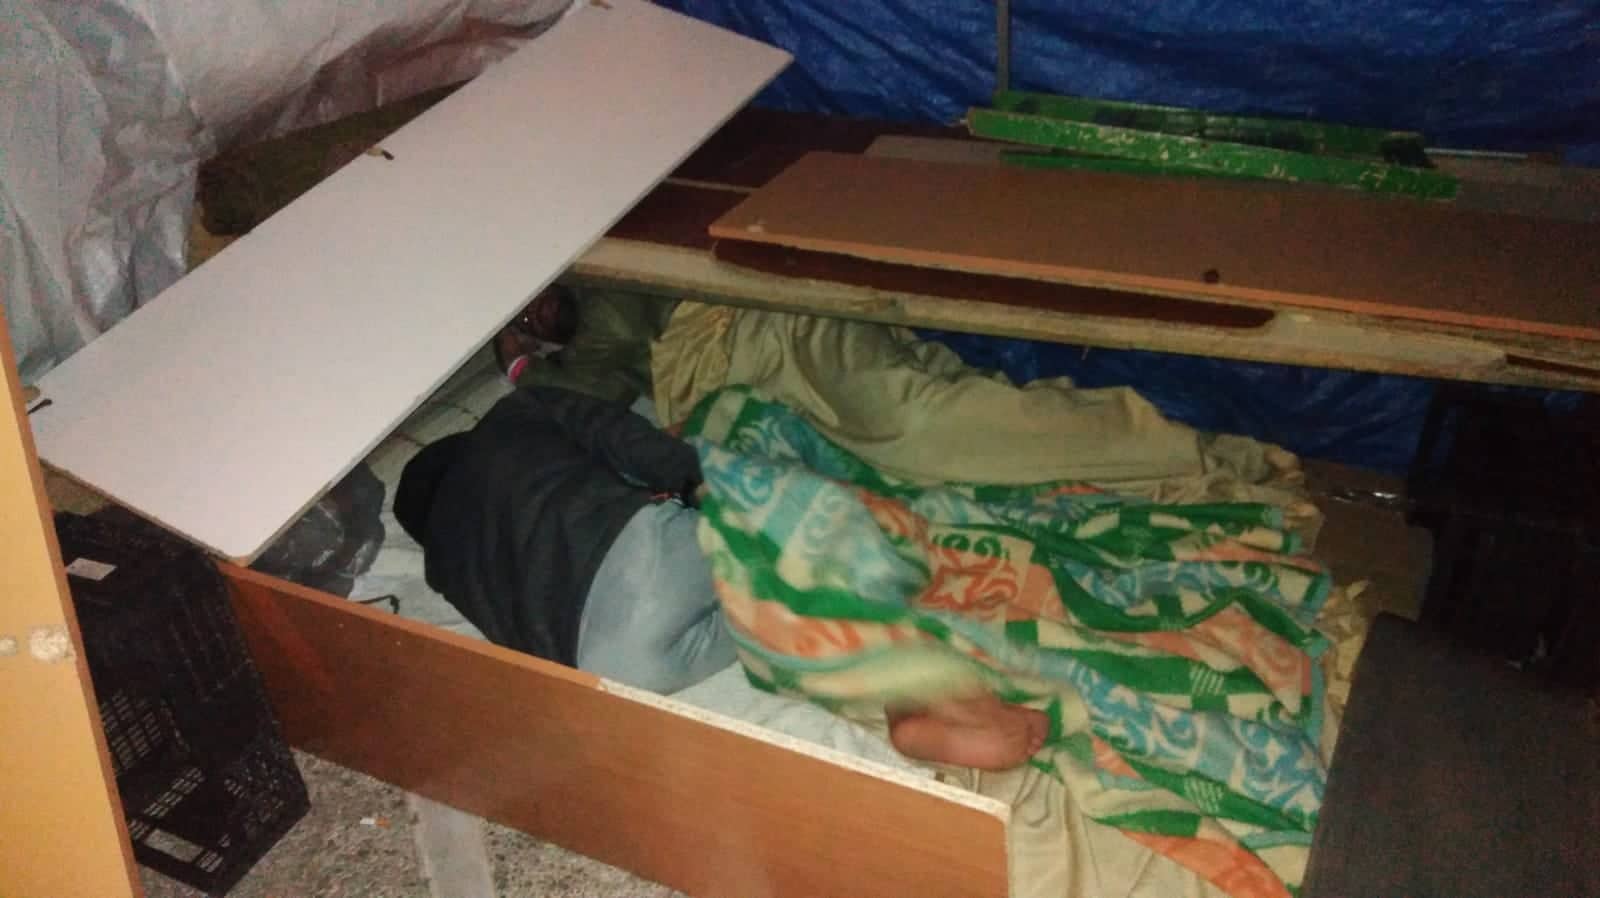 Habitáculo improvisados donde duermen varios extranjeros en el centro de Jerez. FOTO: RED DE APOYO A INMIGRANTES. 